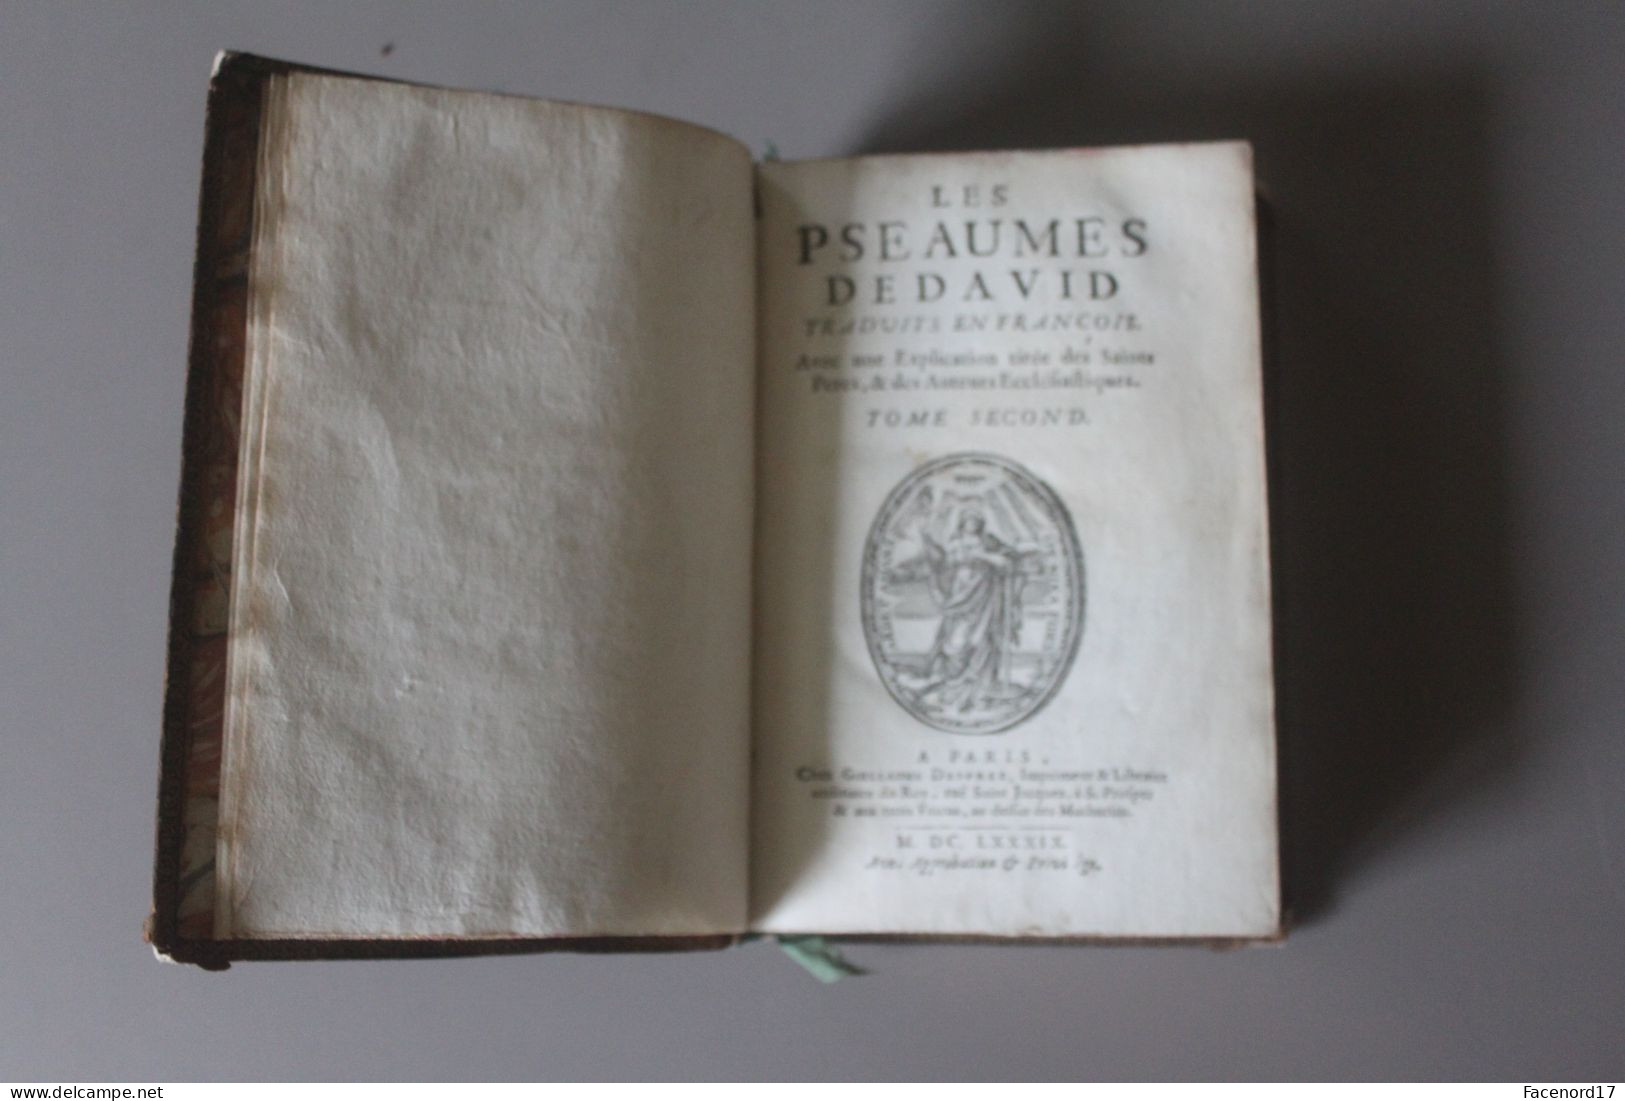 Les Psaumes De David Traduits En François Tome Second 1689 Guillaume Deprez Paris - Before 18th Century